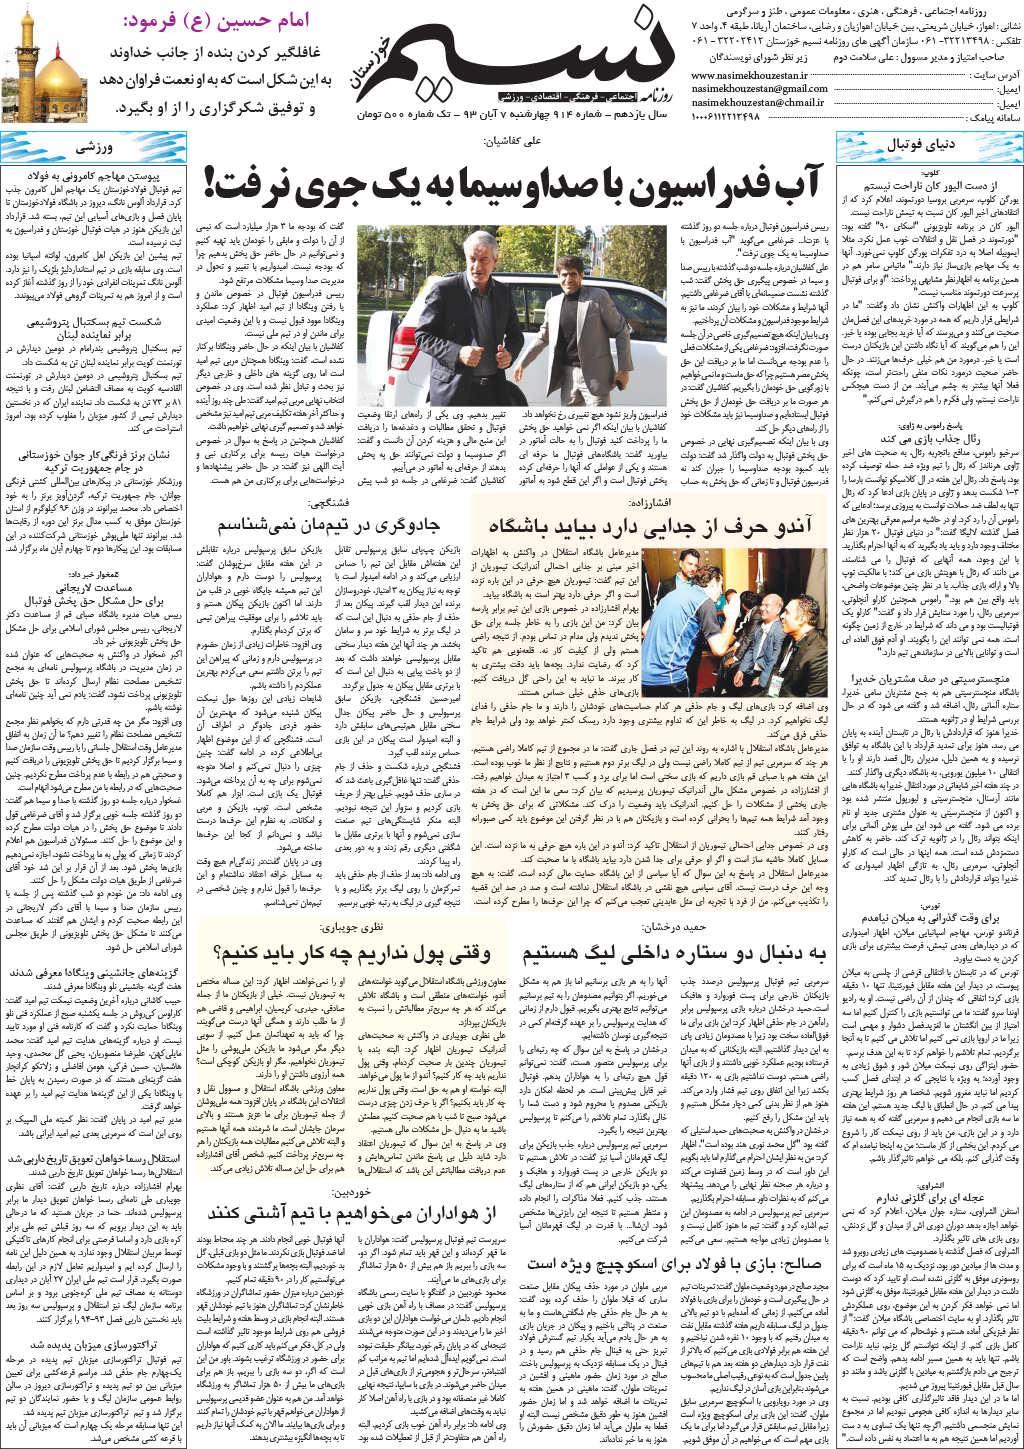 صفحه آخر روزنامه نسیم شماره 914